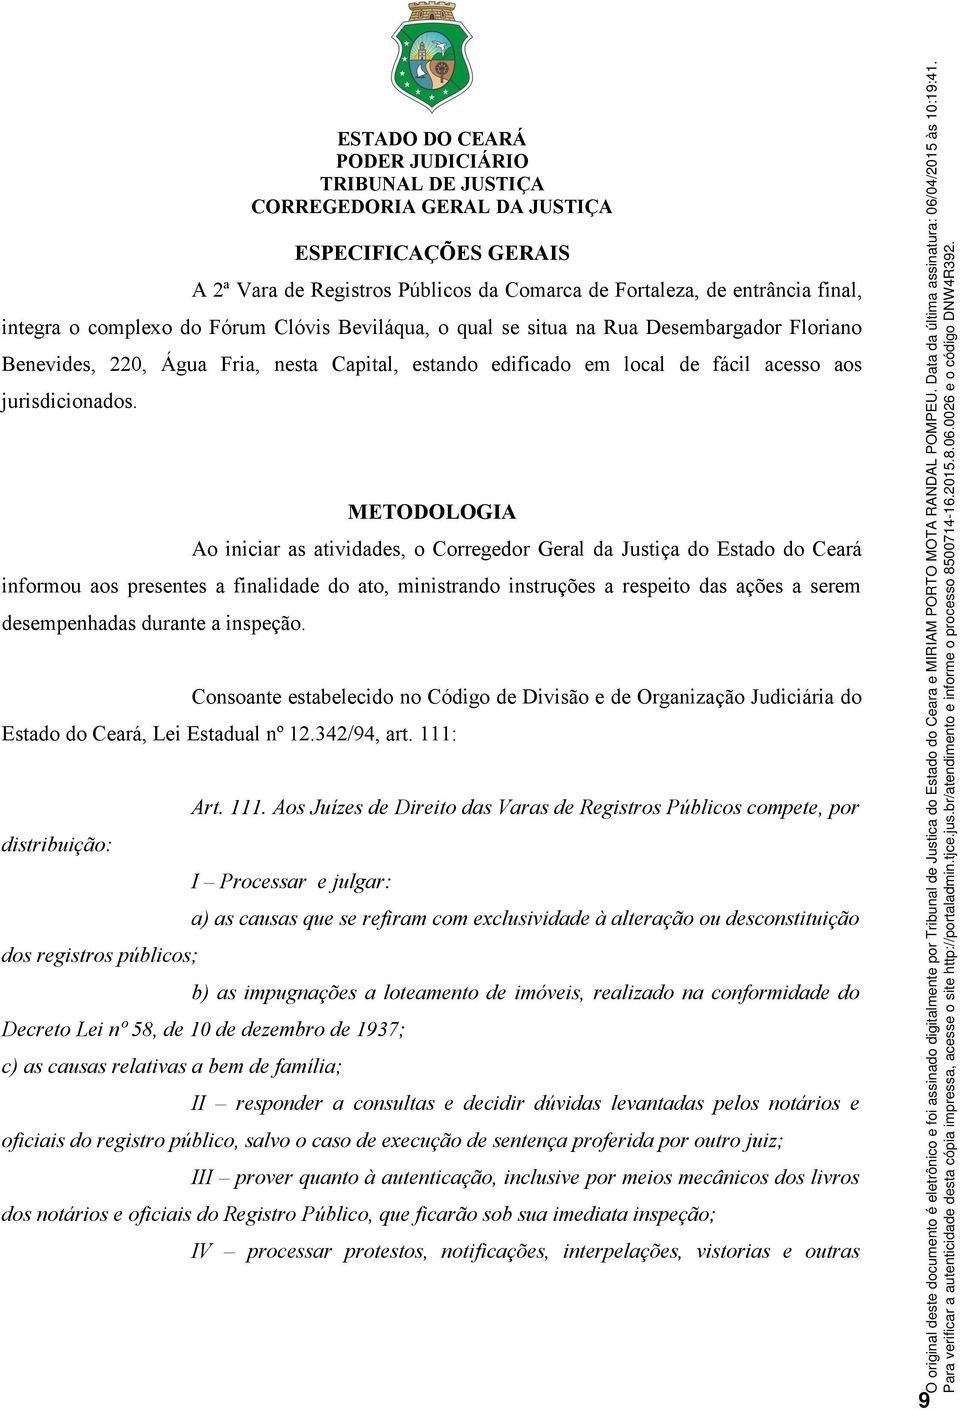 METODOLOGIA Ao iniciar as atividades, o Corregedor Geral da Justiça do Estado do Ceará informou aos presentes a finalidade do ato, ministrando instruções a respeito das ações a serem desempenhadas